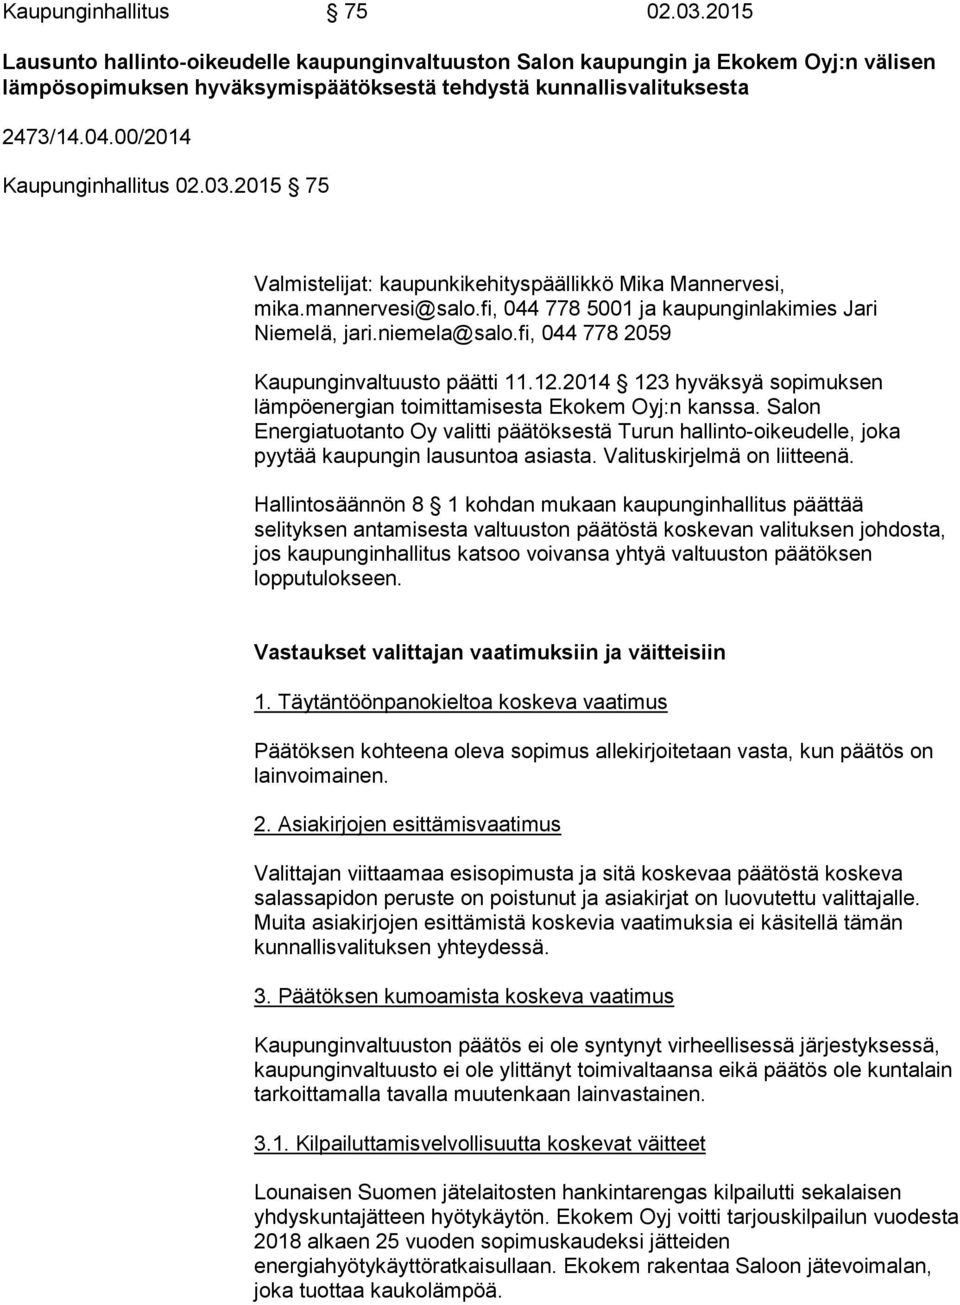 fi, 044 778 2059 Kaupunginvaltuusto päätti 11.12.2014 123 hyväksyä sopimuksen lämpöenergian toimittamisesta Ekokem Oyj:n kanssa.